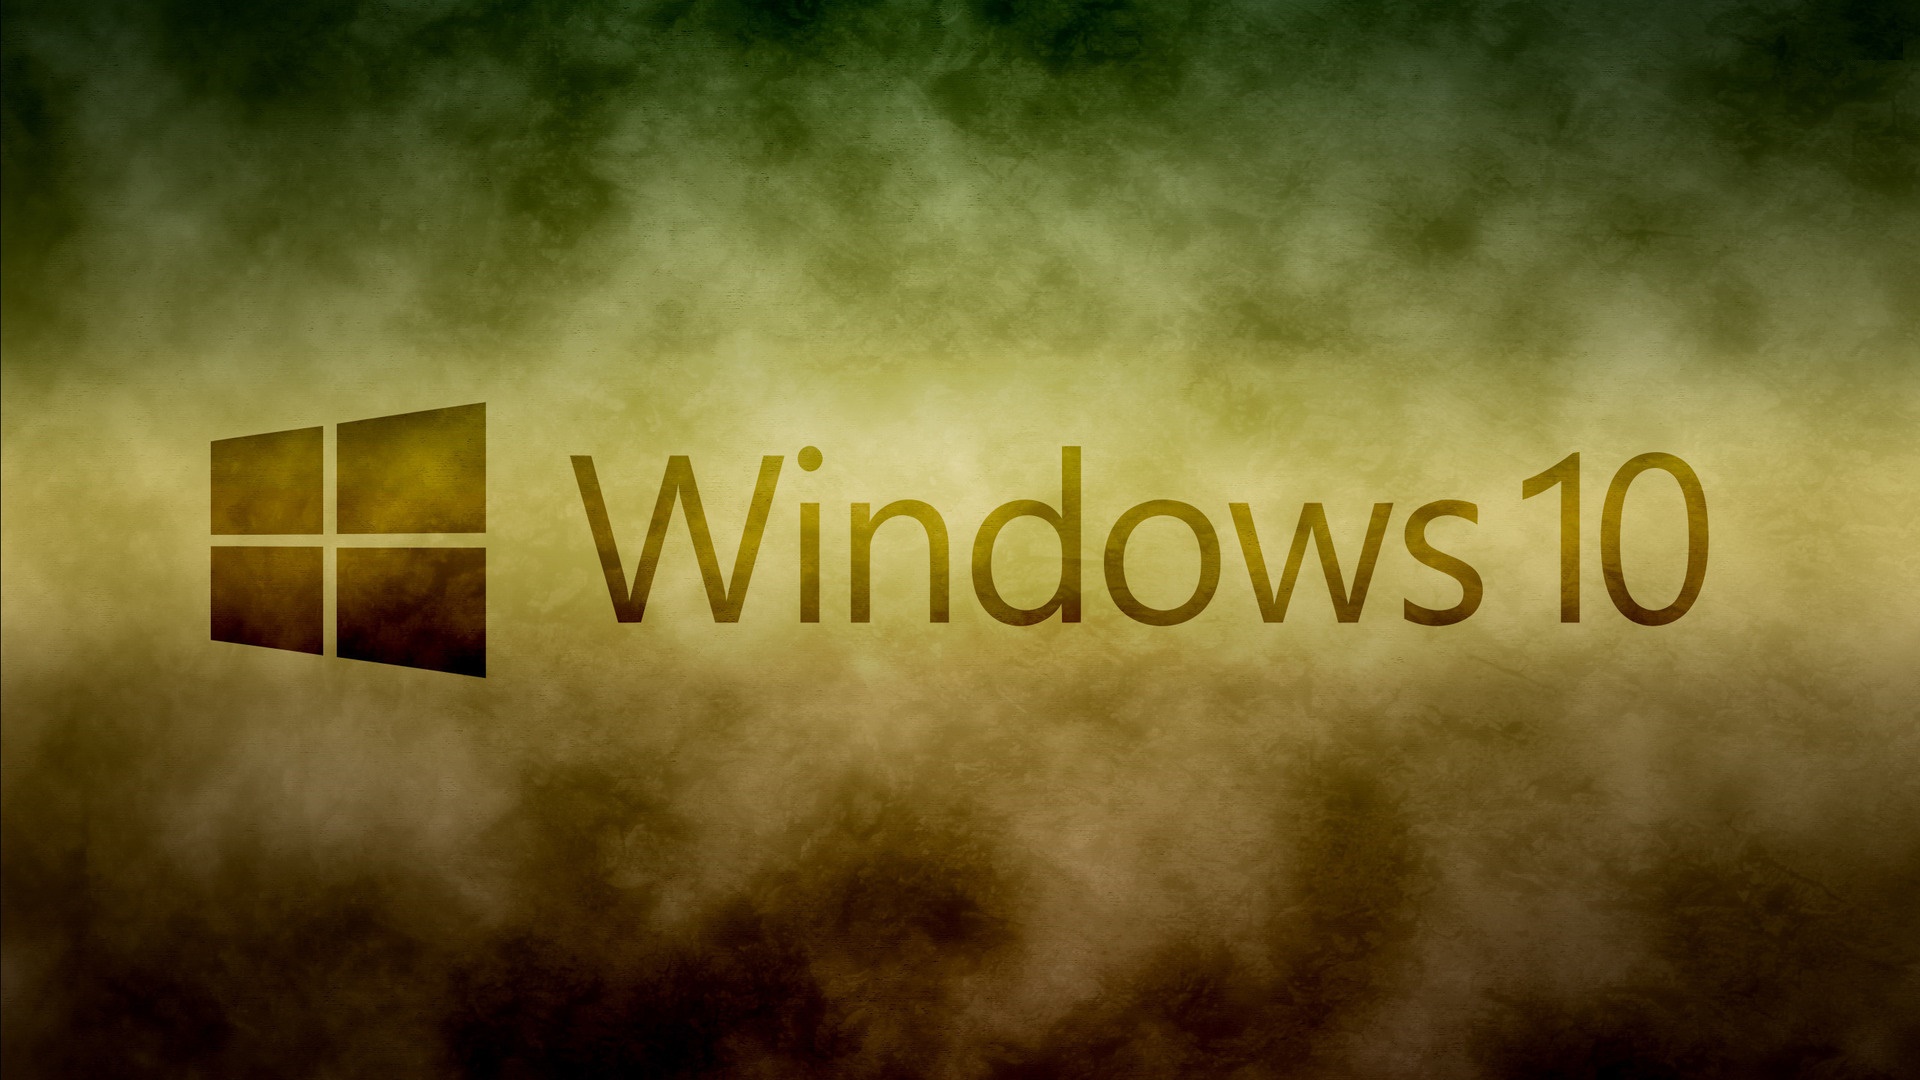 windows 11 laptop